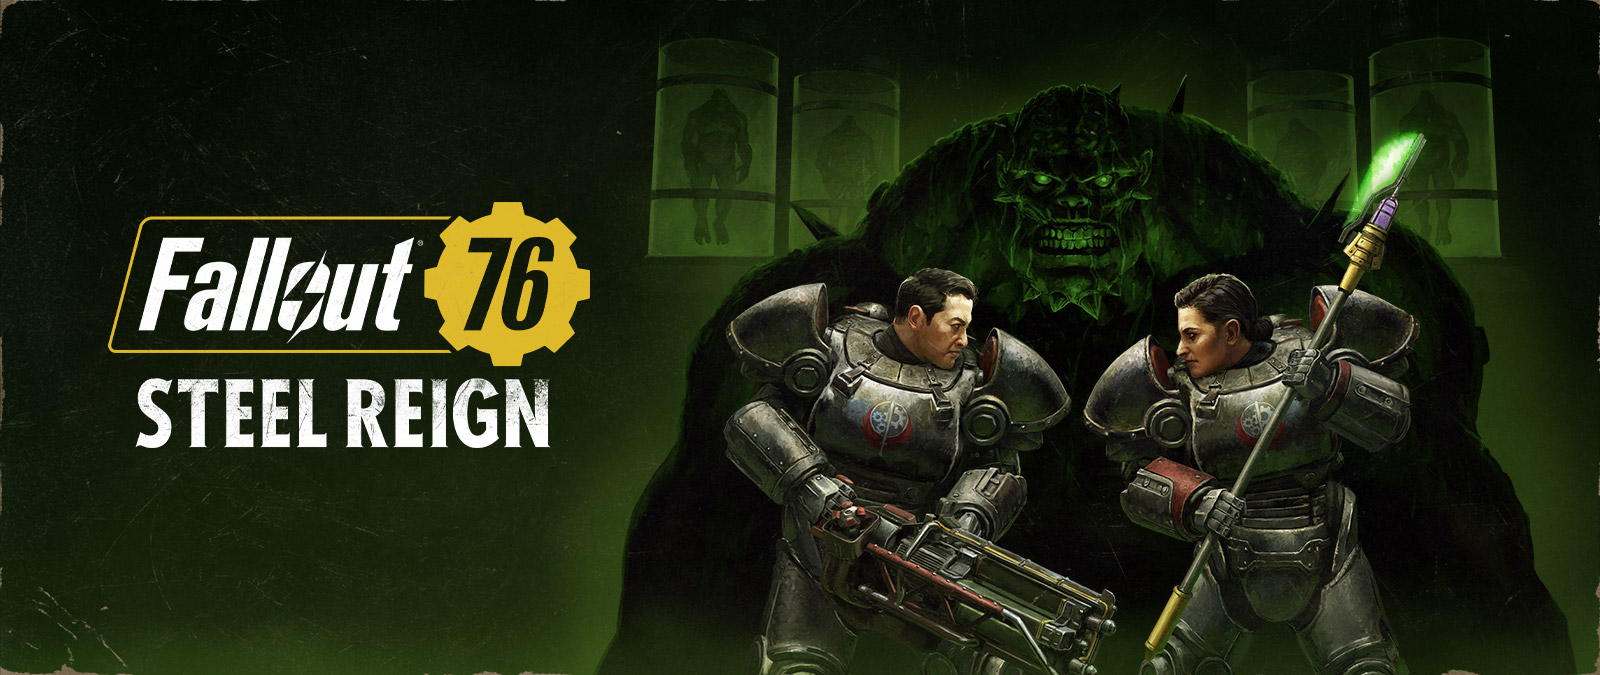 Fallout 76, Steel Reign, kaksi hahmoa kasvokkain mekaanisessa haarniskassa, taustalla suuri hirviö.